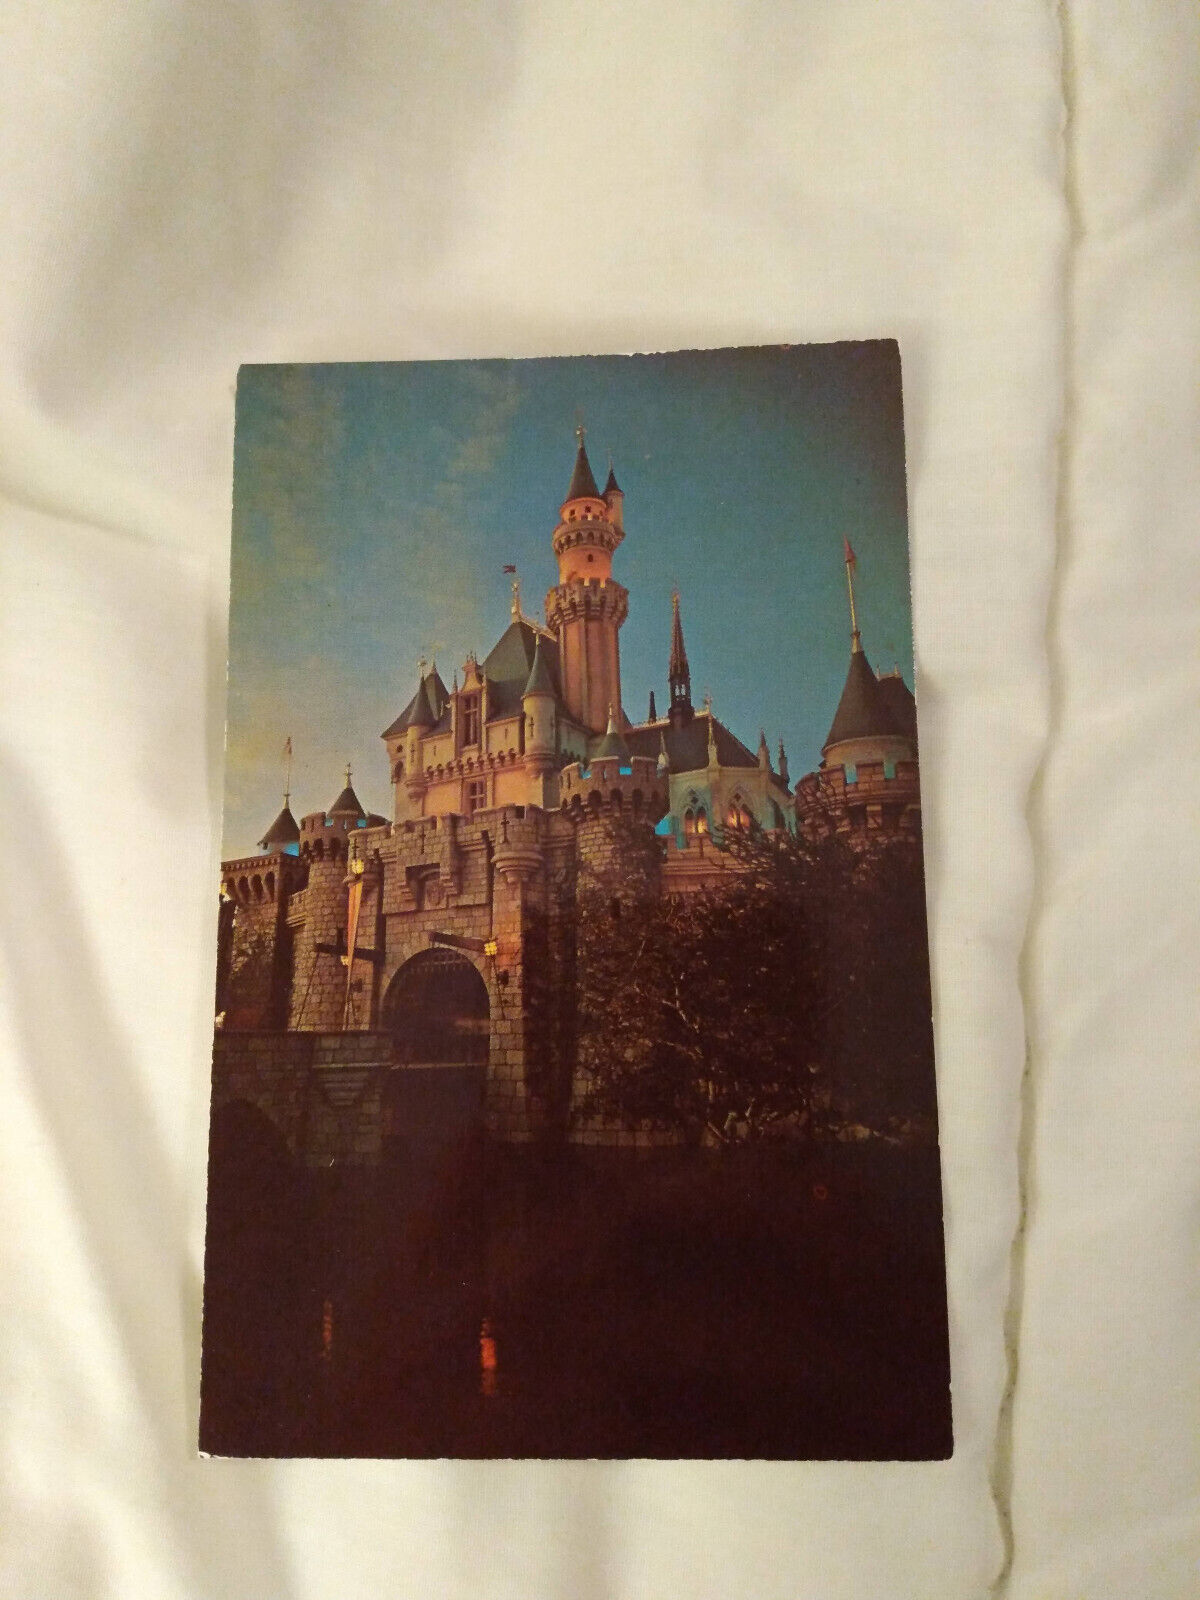 Disneyland Sleeping Beauty Castle Night View Postcard UNUSED DT-35930-C